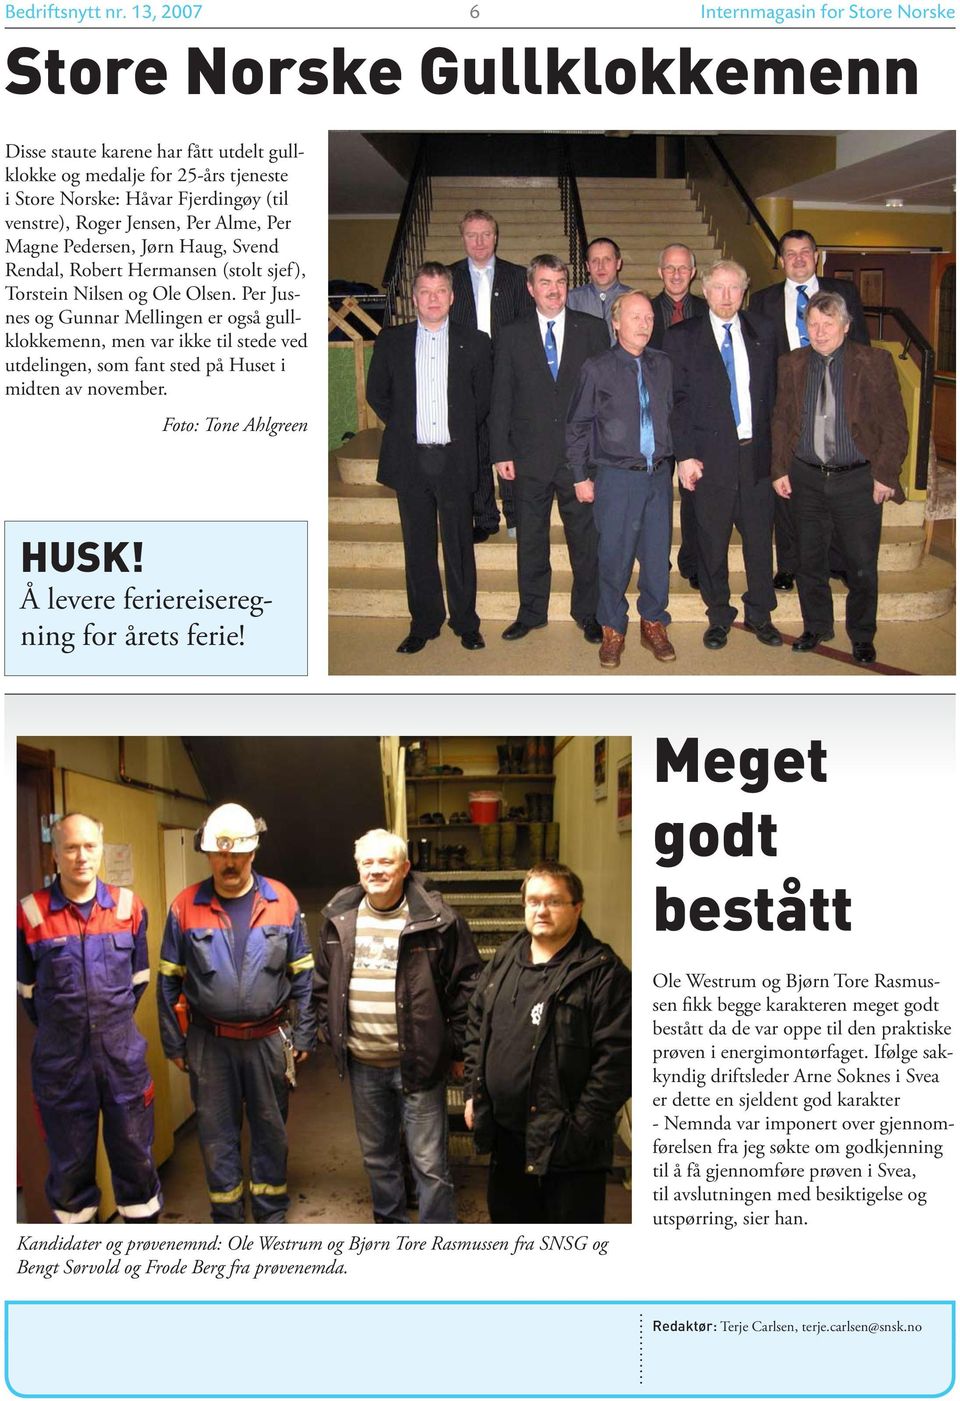 Roger Jensen, Per Alme, Per Magne Pedersen, Jørn Haug, Svend Rendal, Robert Hermansen (stolt sjef), Torstein Nilsen og Ole Olsen.